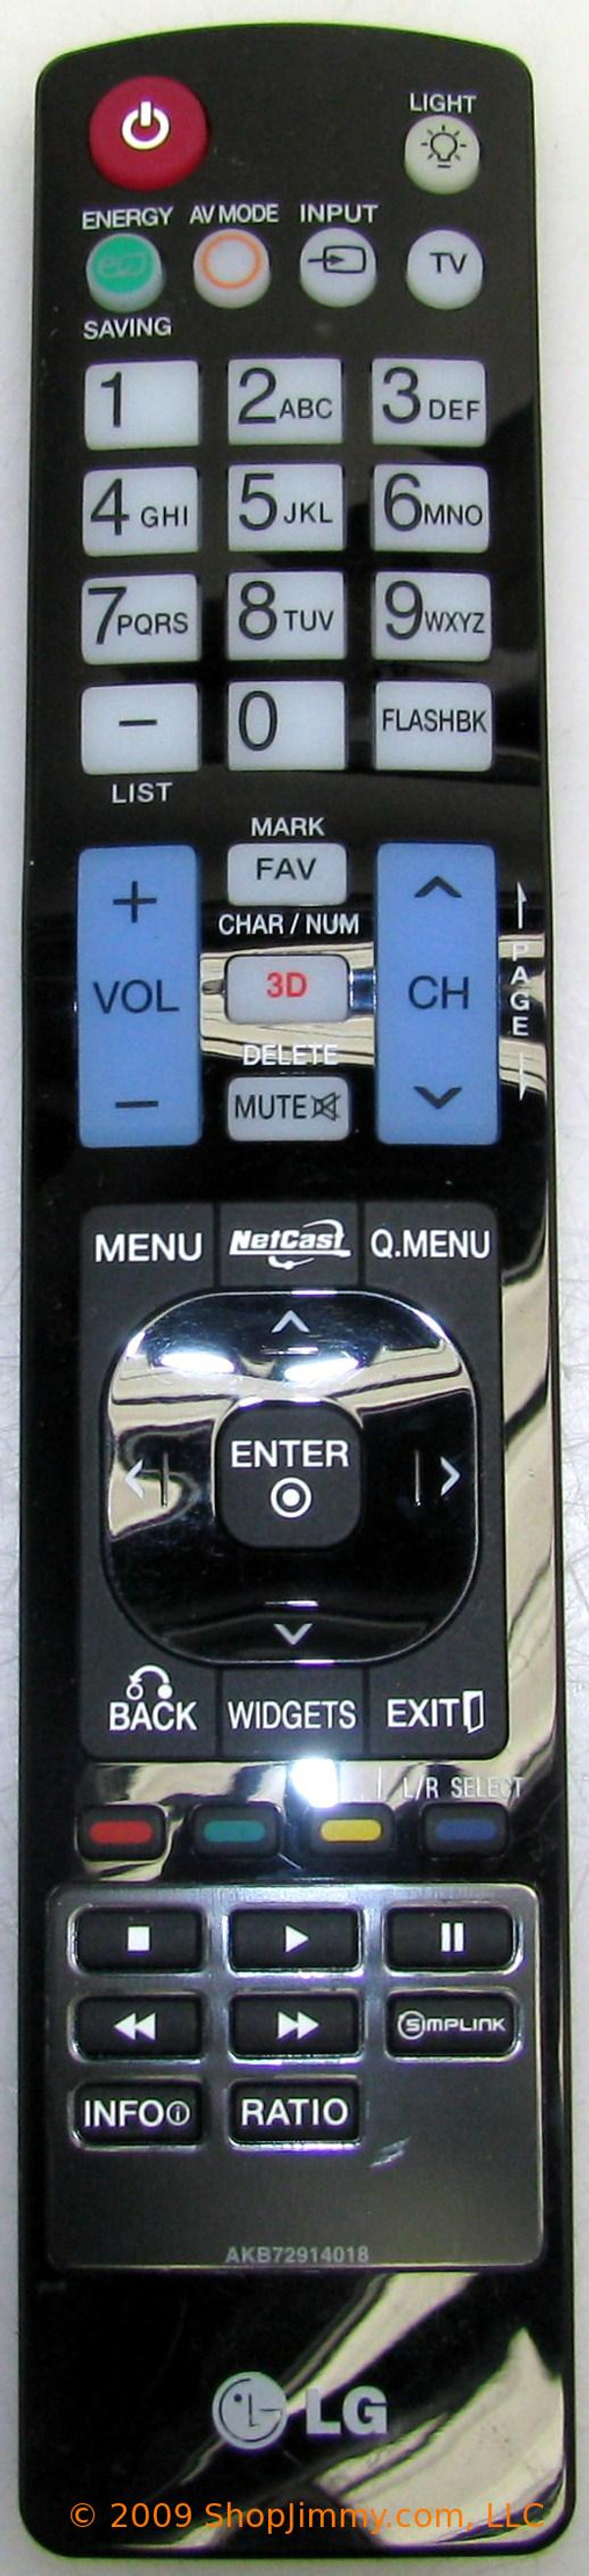 LG AKB72914018 Remote Control